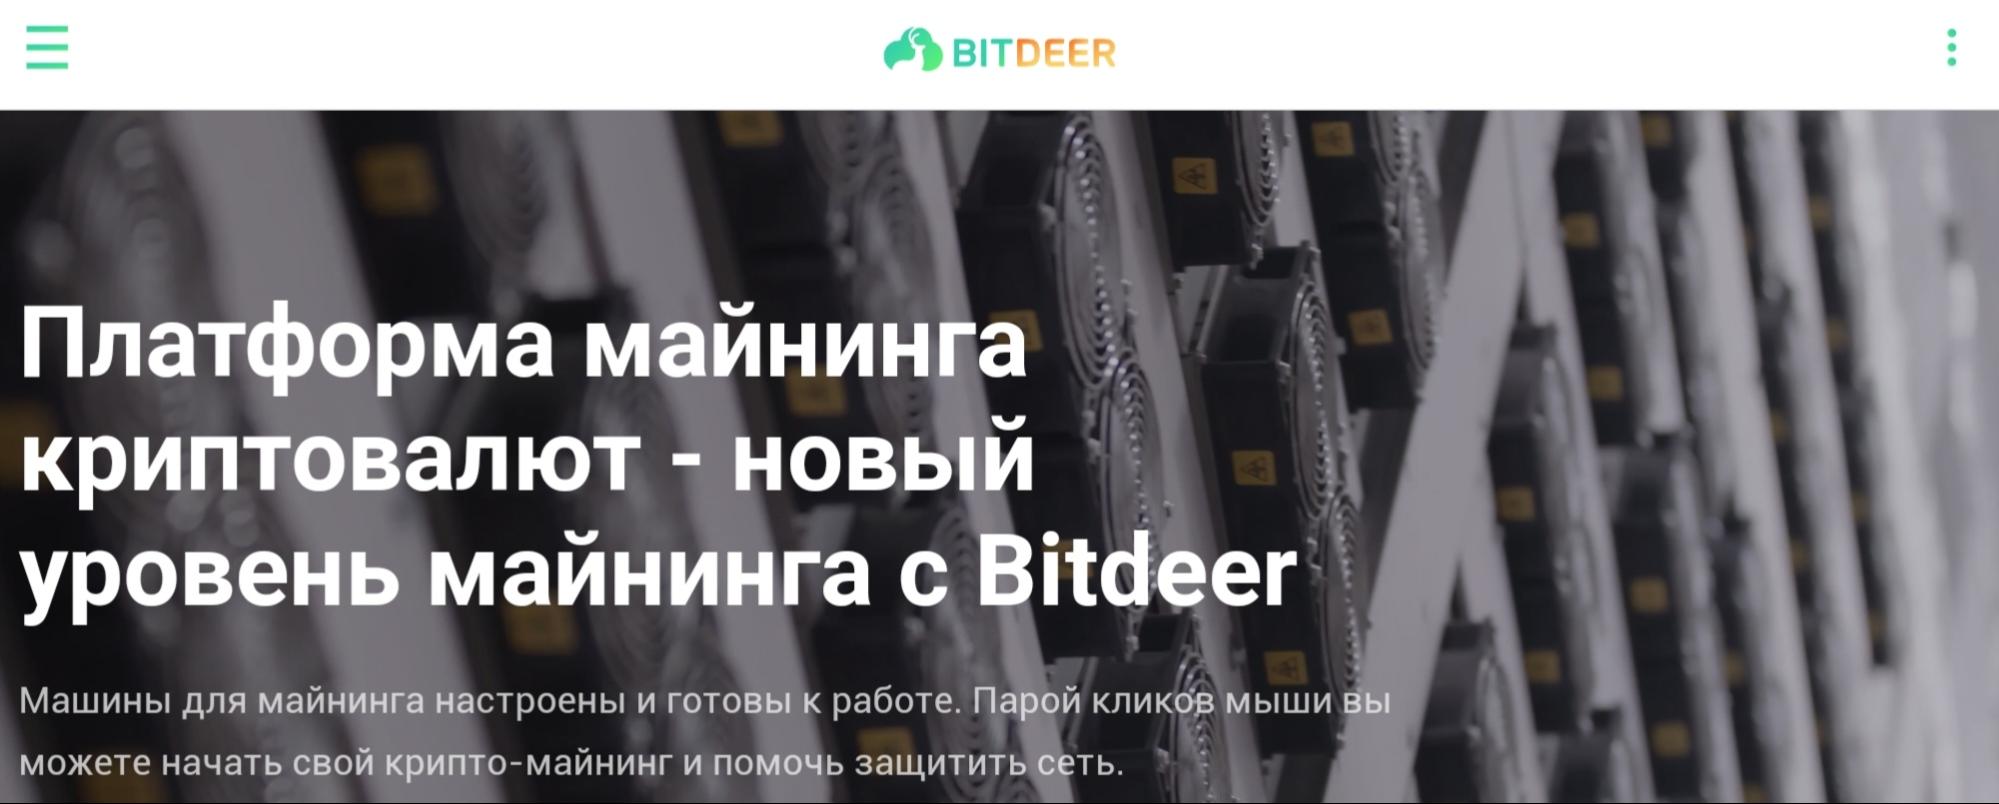 Bitdeer - сайт